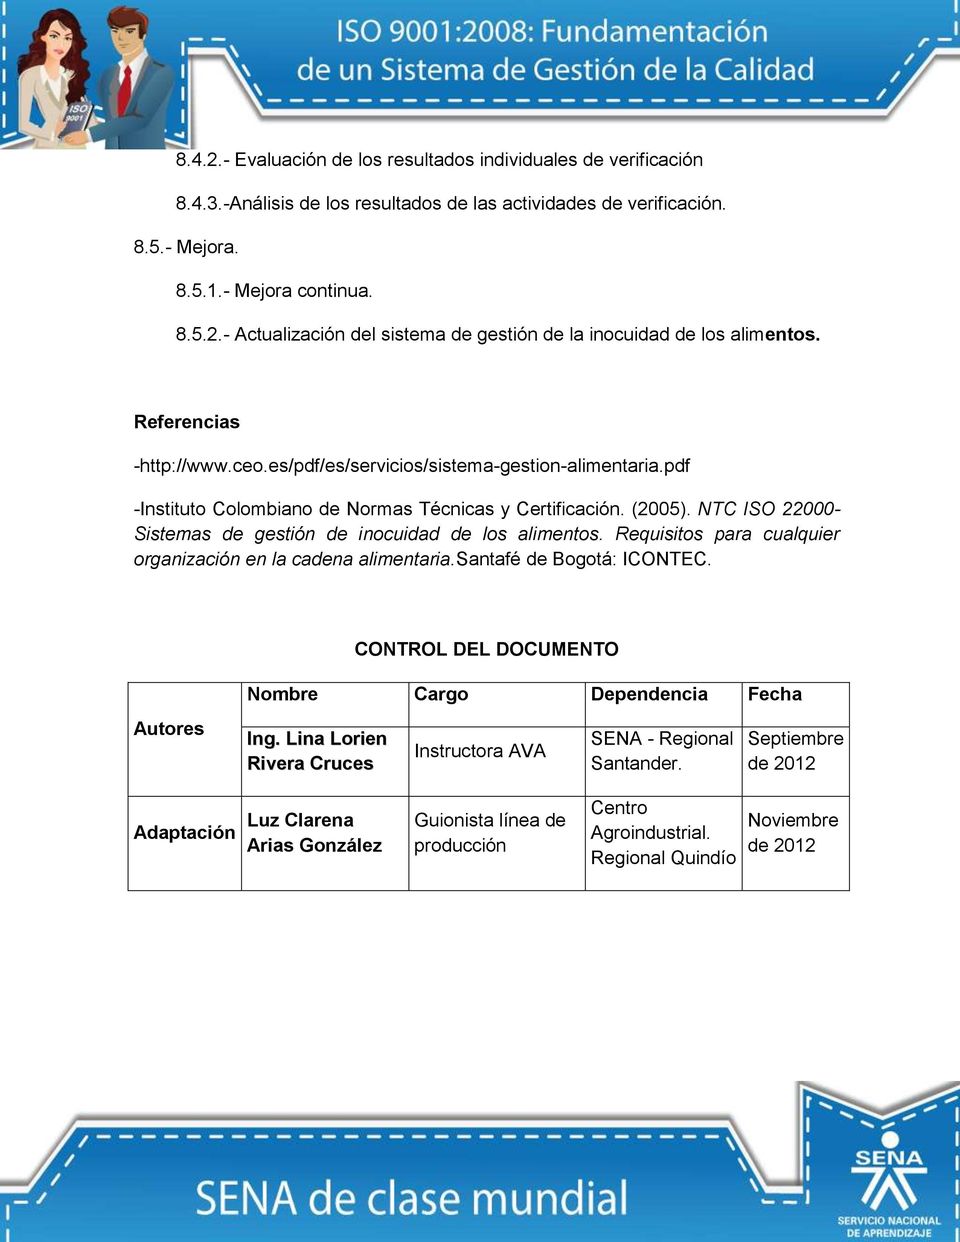 NTC ISO 22000- Sistemas de gestión de inocuidad de los alimentos. Requisitos para cualquier organización en la cadena alimentaria.santafé de Bogotá: ICONTEC.